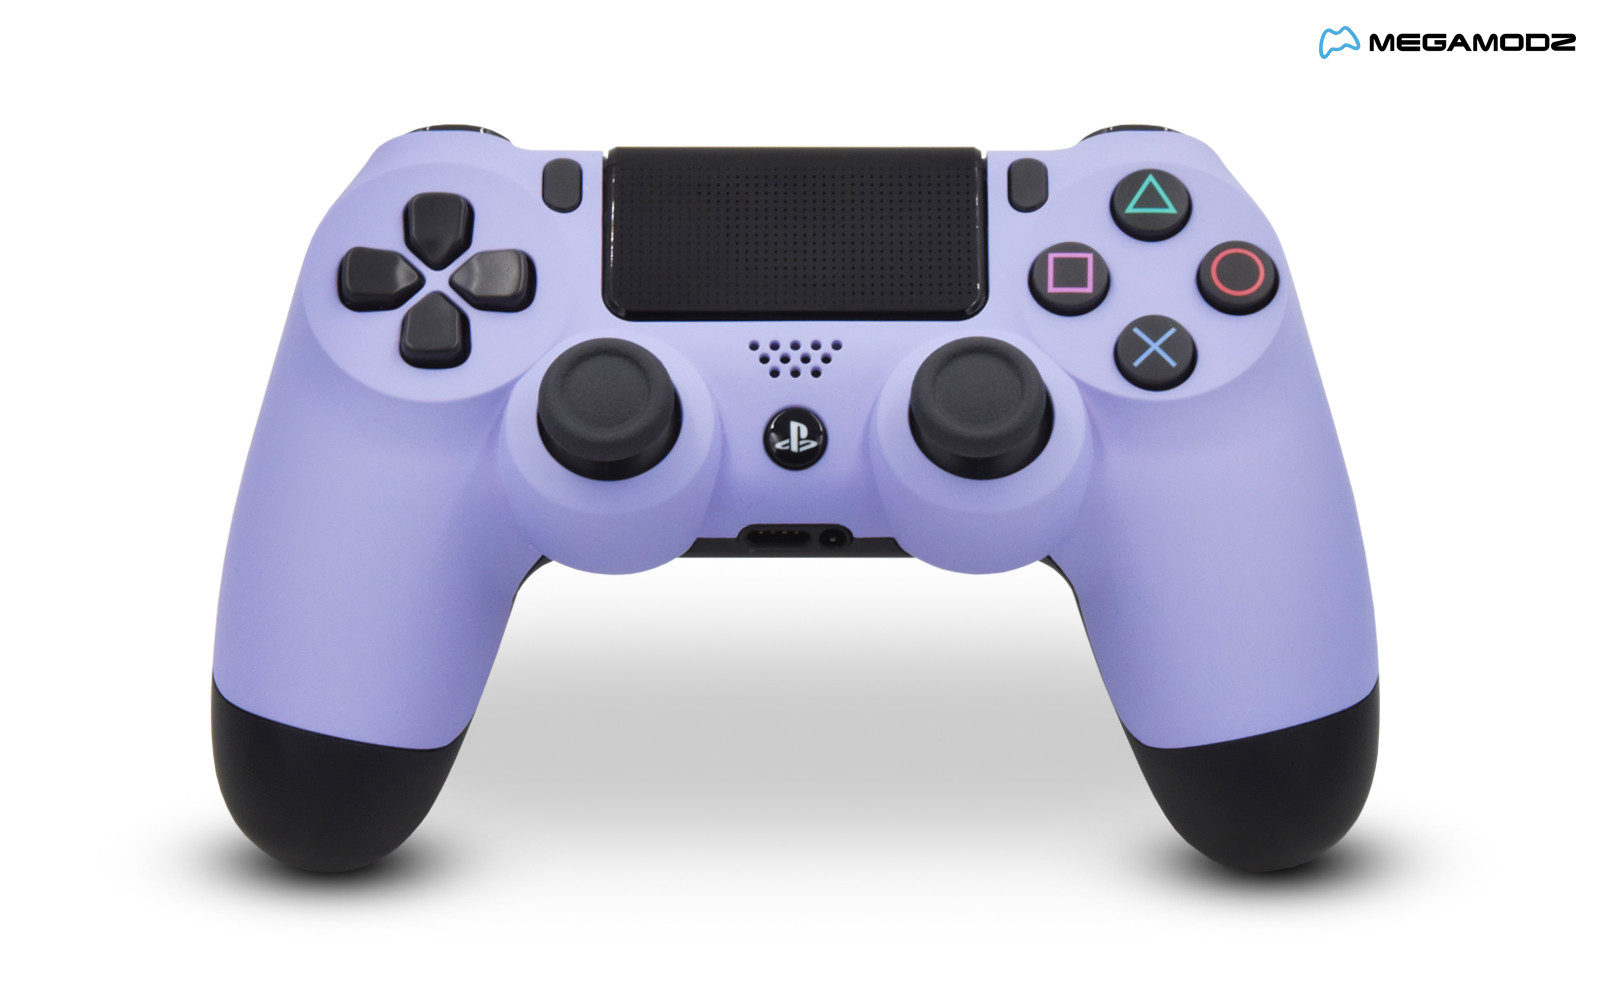 ps4 controller light purple